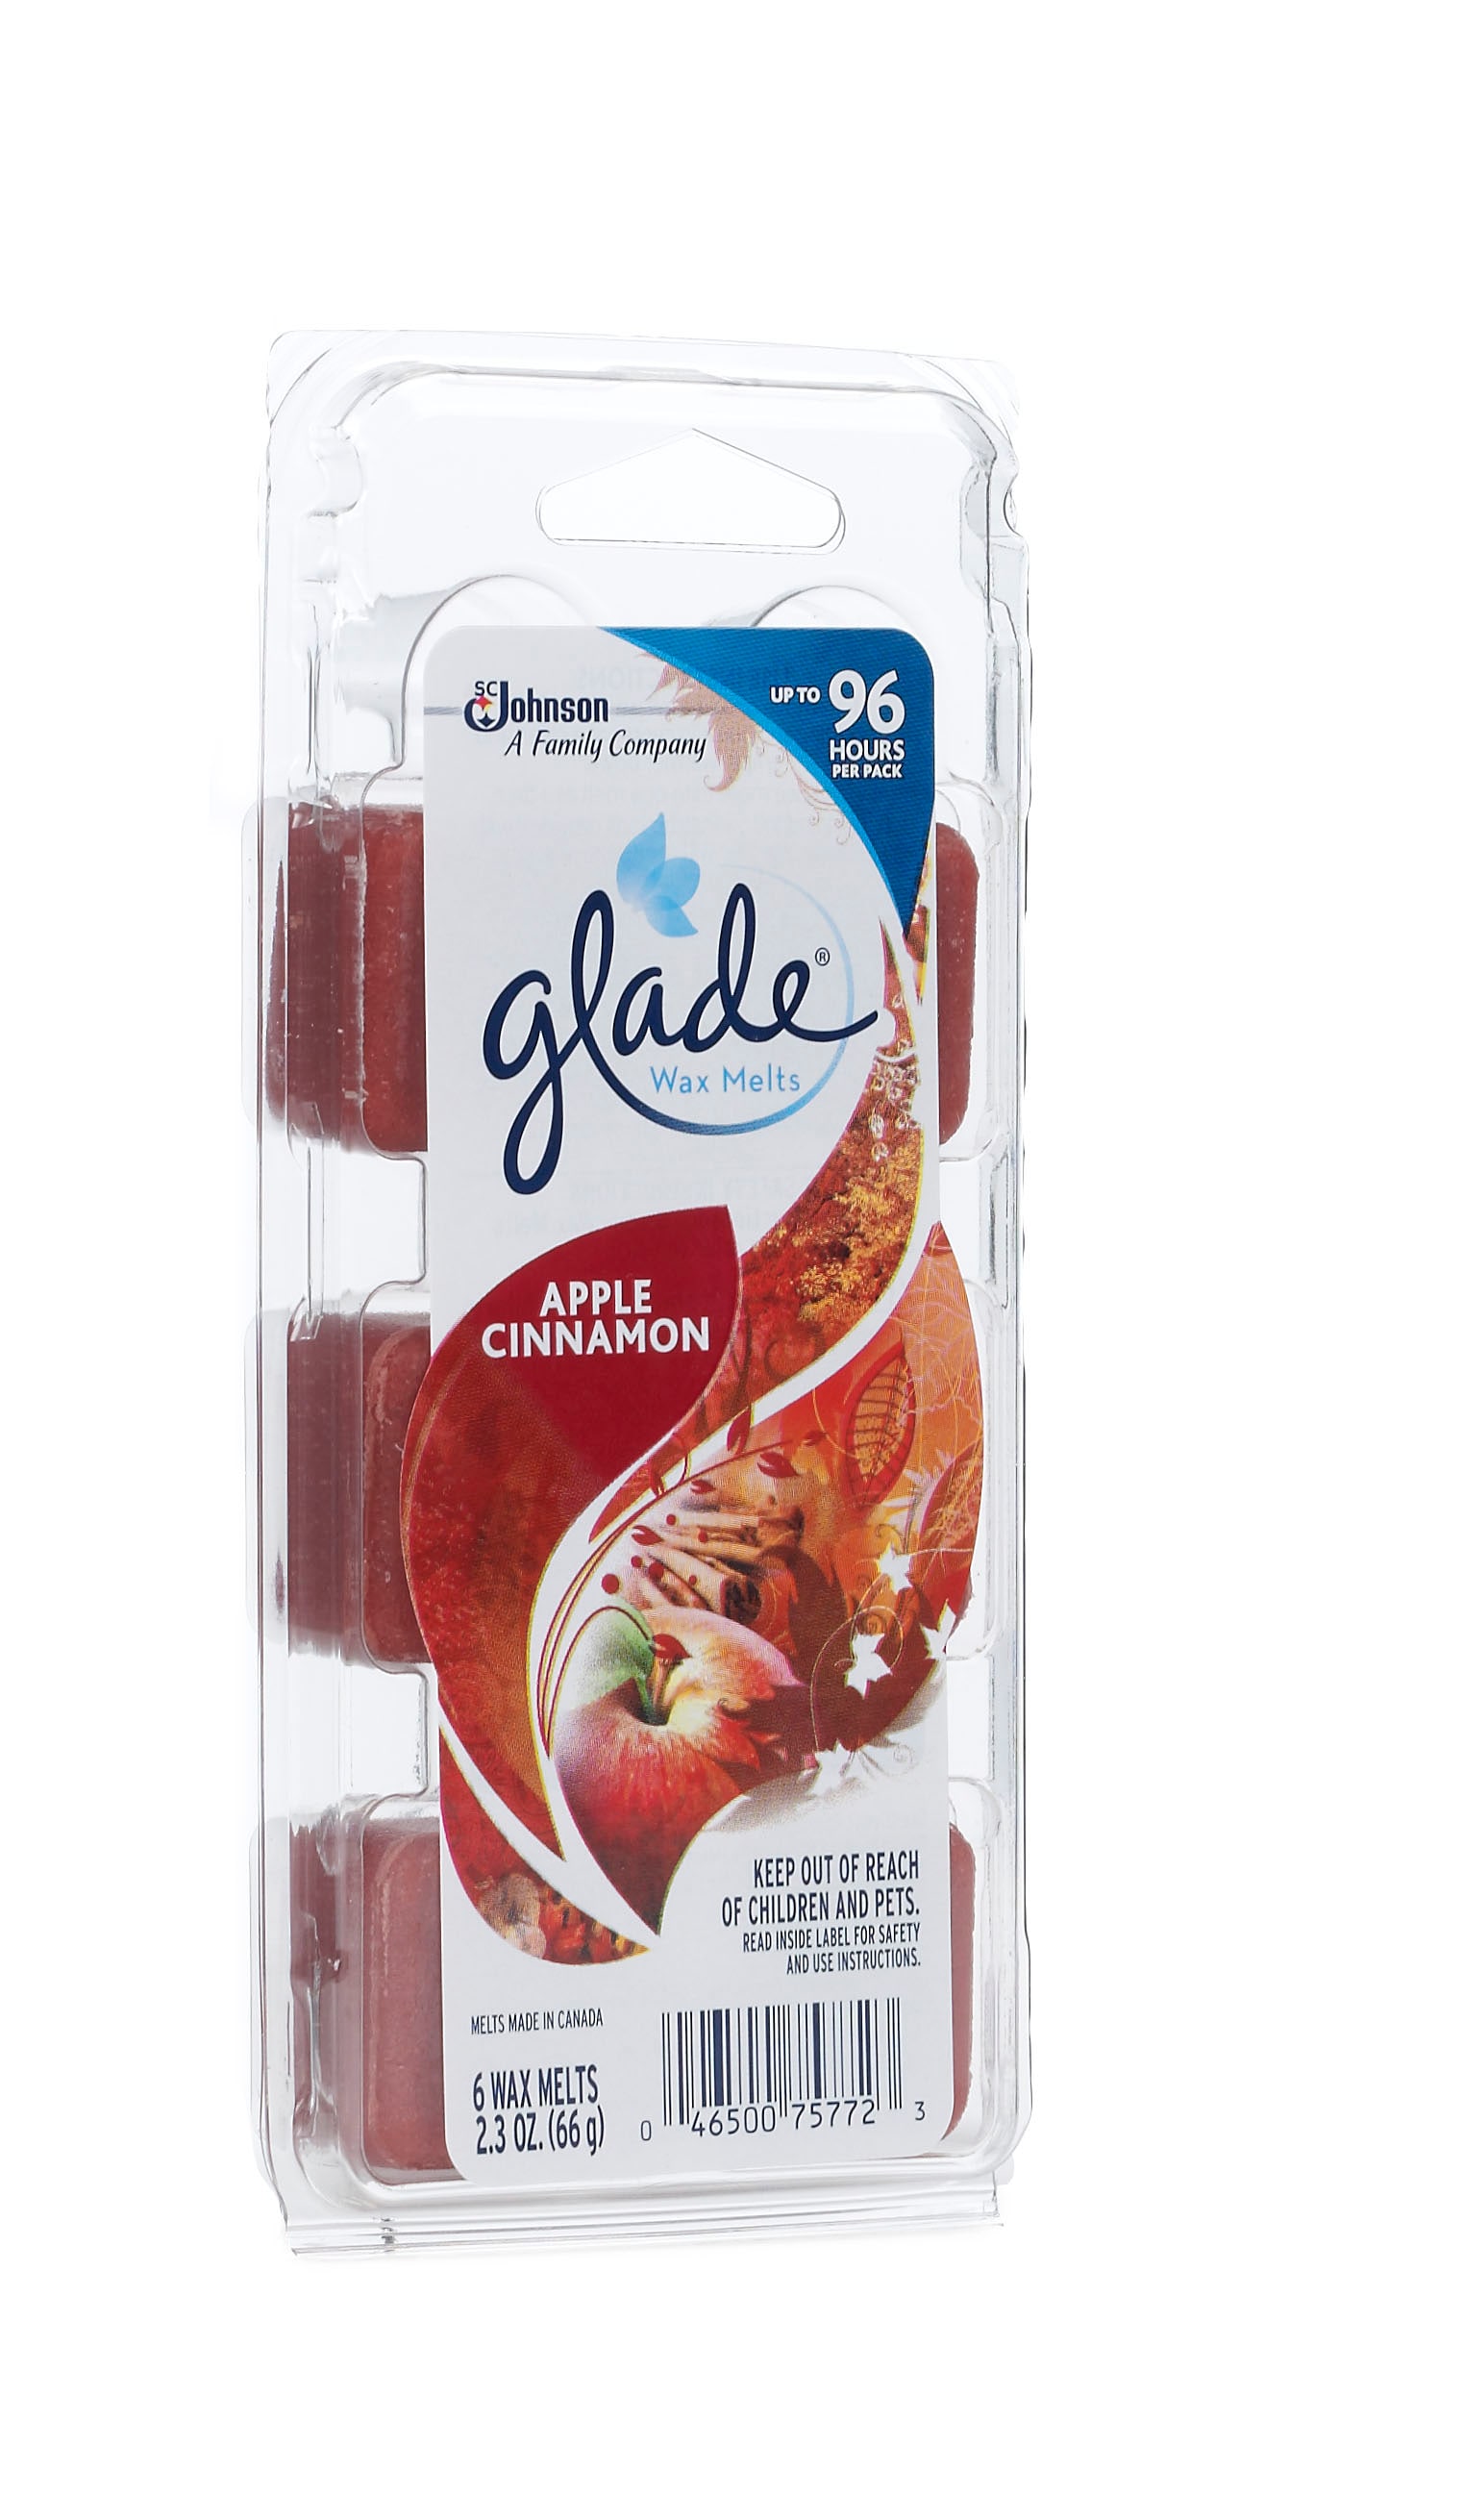 1 x Glade Wax Melts